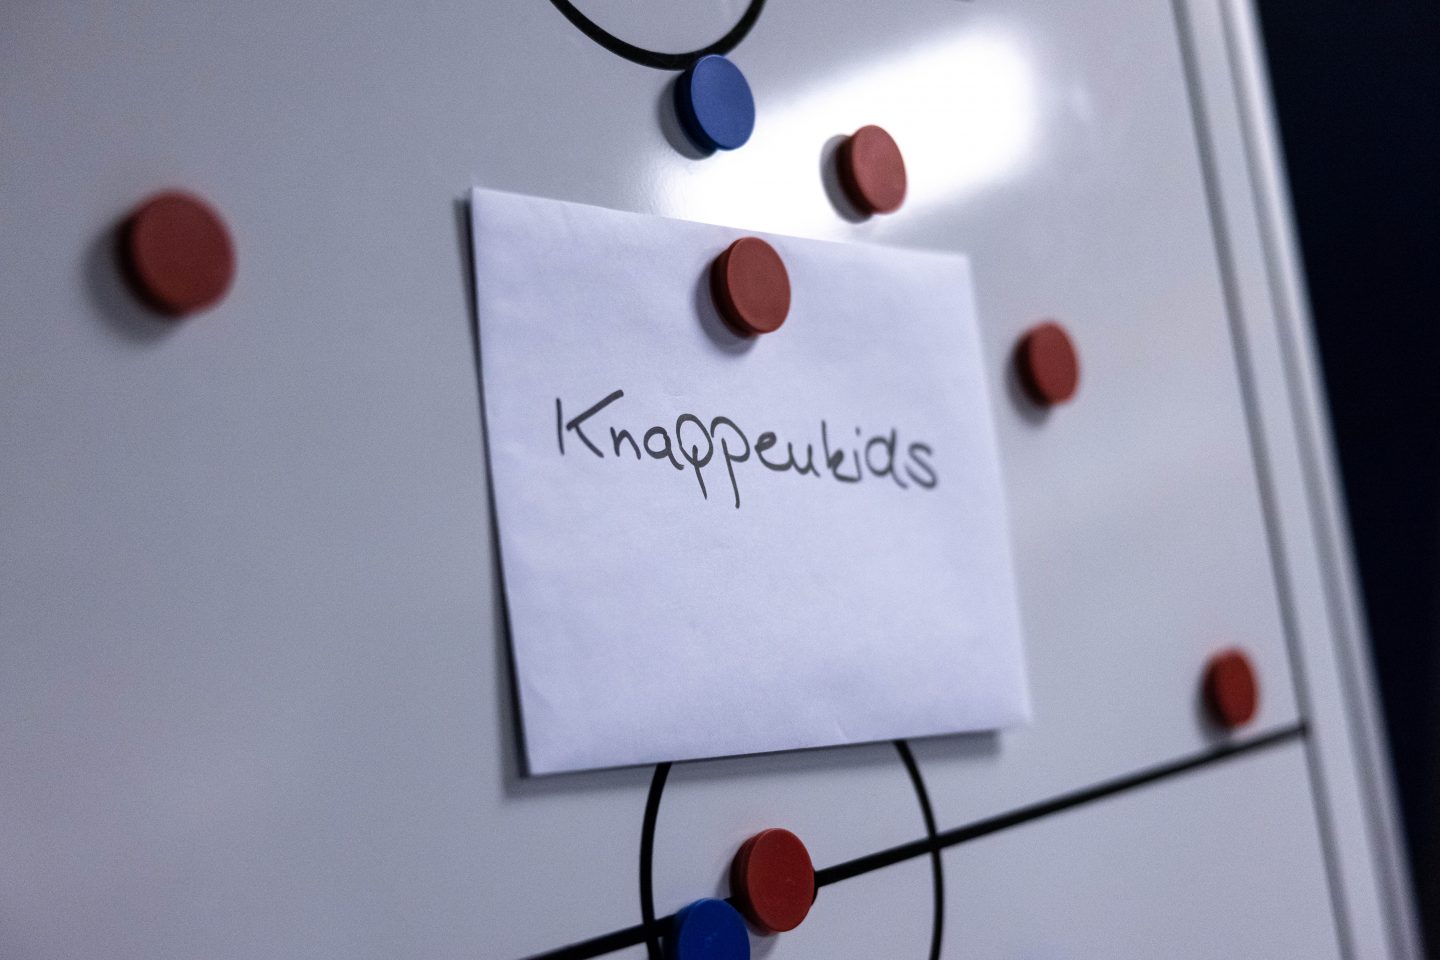 FC Schalke 04, Knappenkids, Blick hinter die Kulissen, 29.03.202